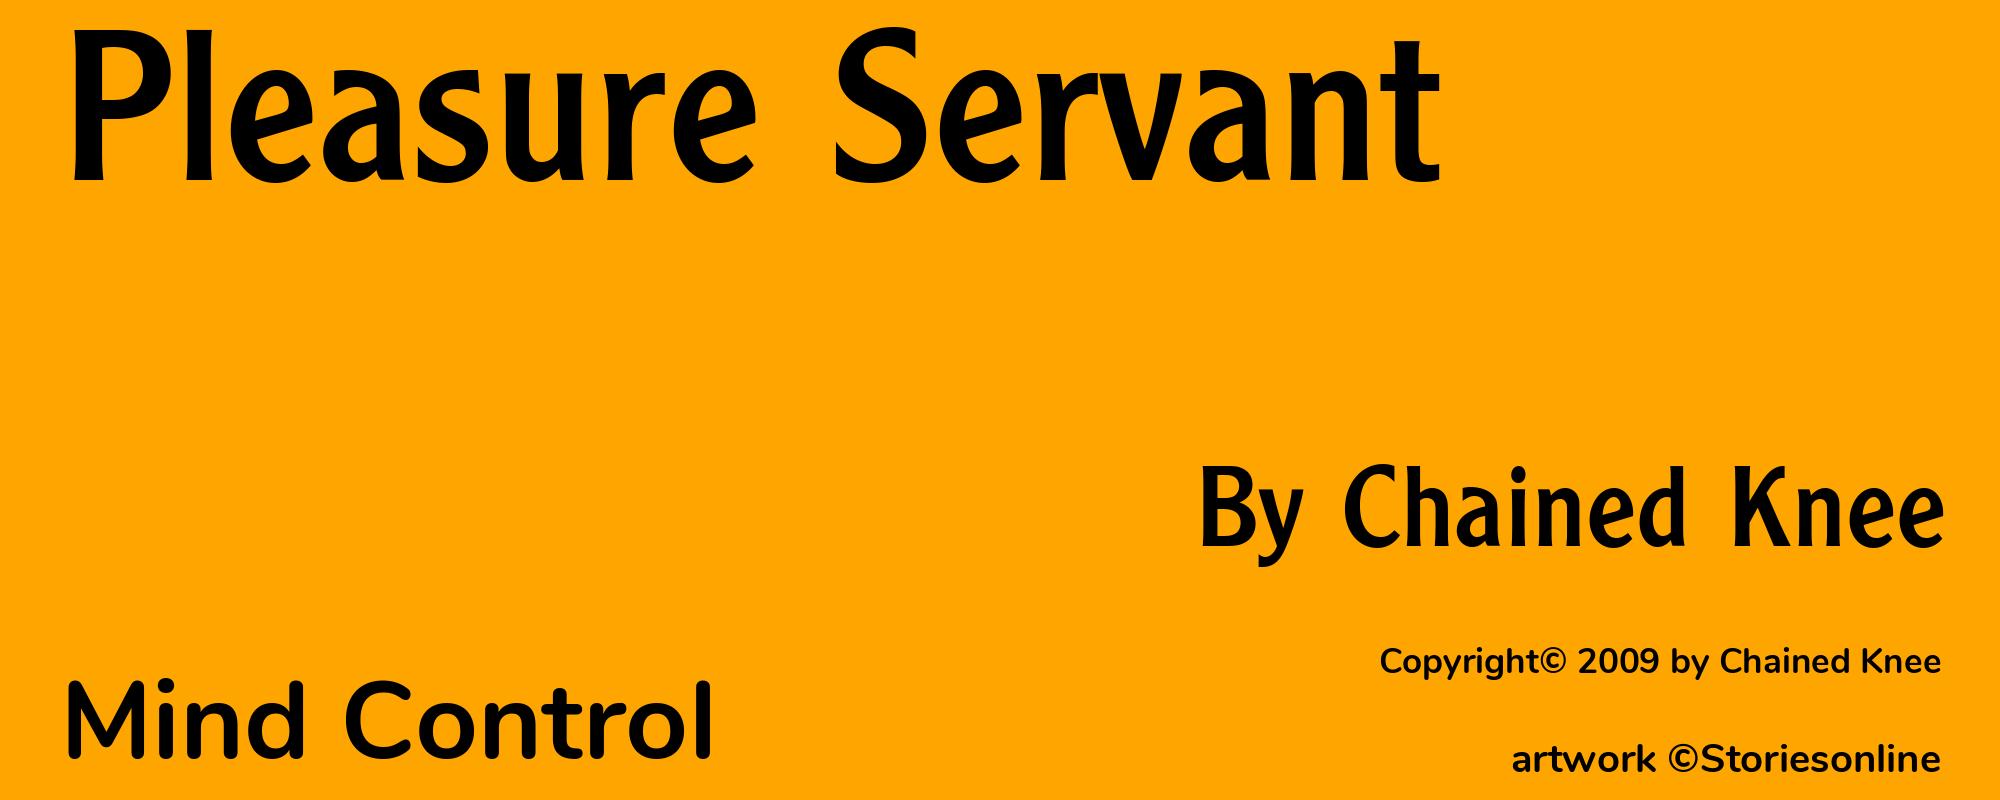 Pleasure Servant - Cover